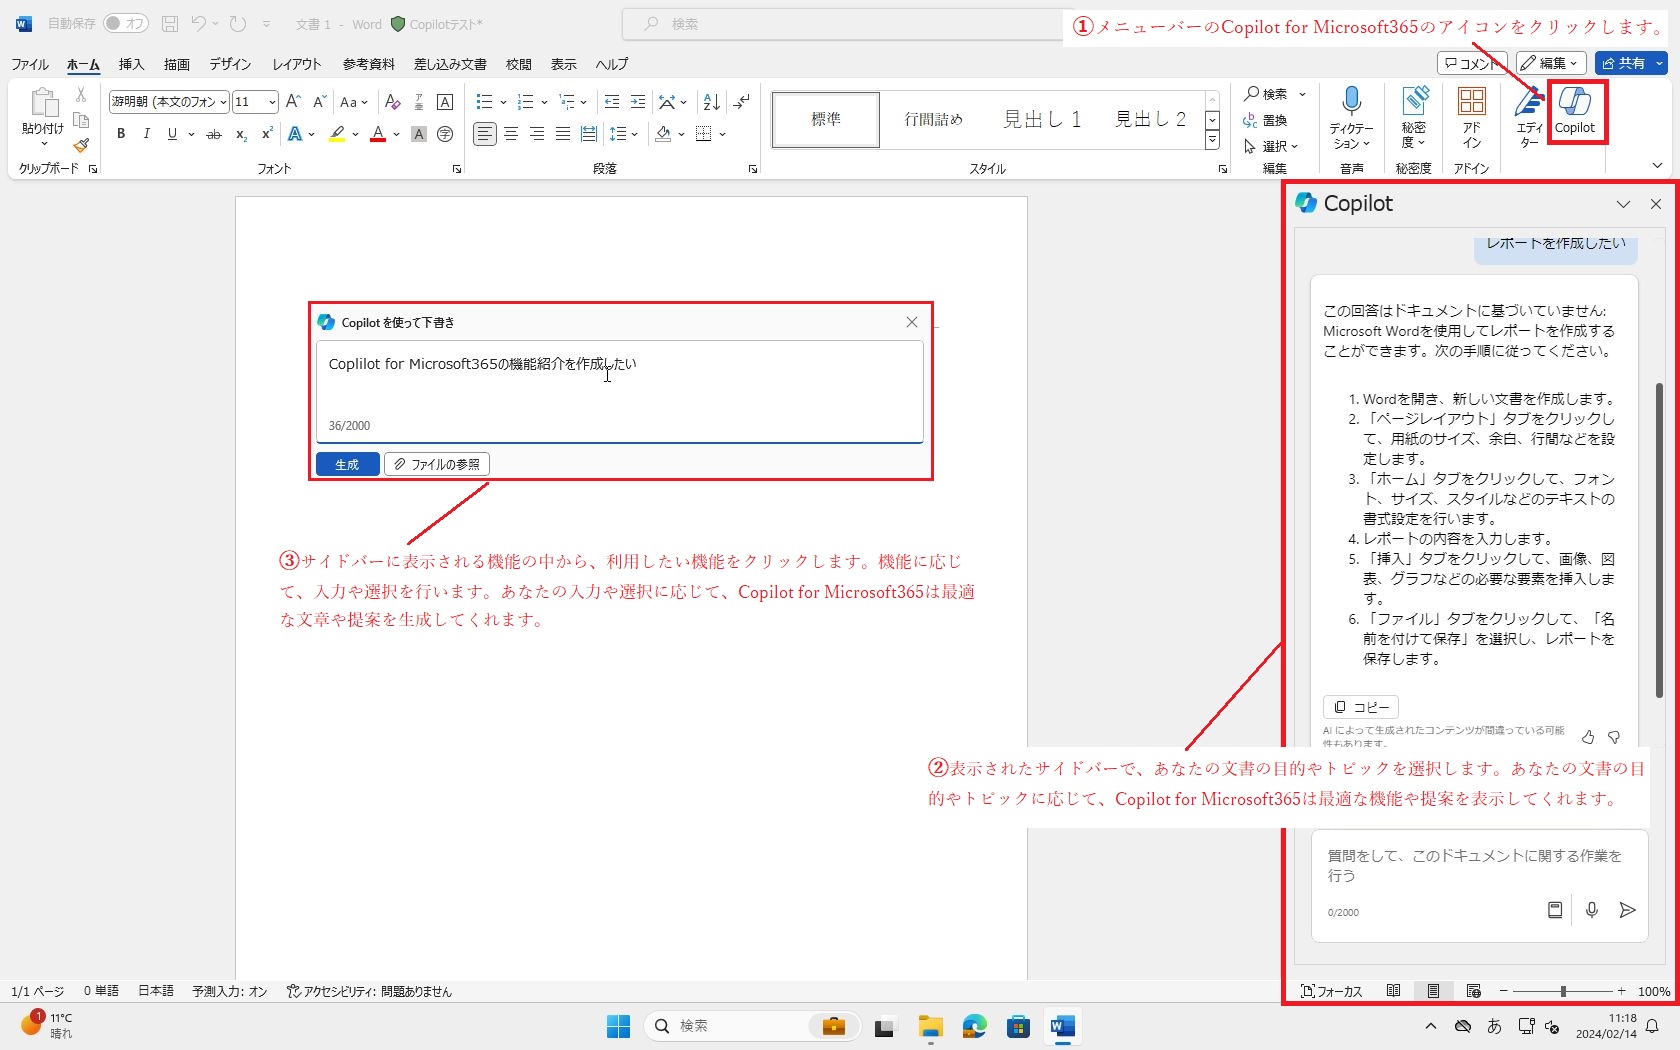 Copilot for Microsoft365で文書作成を効率化しよう(1)_画像_001.jpg